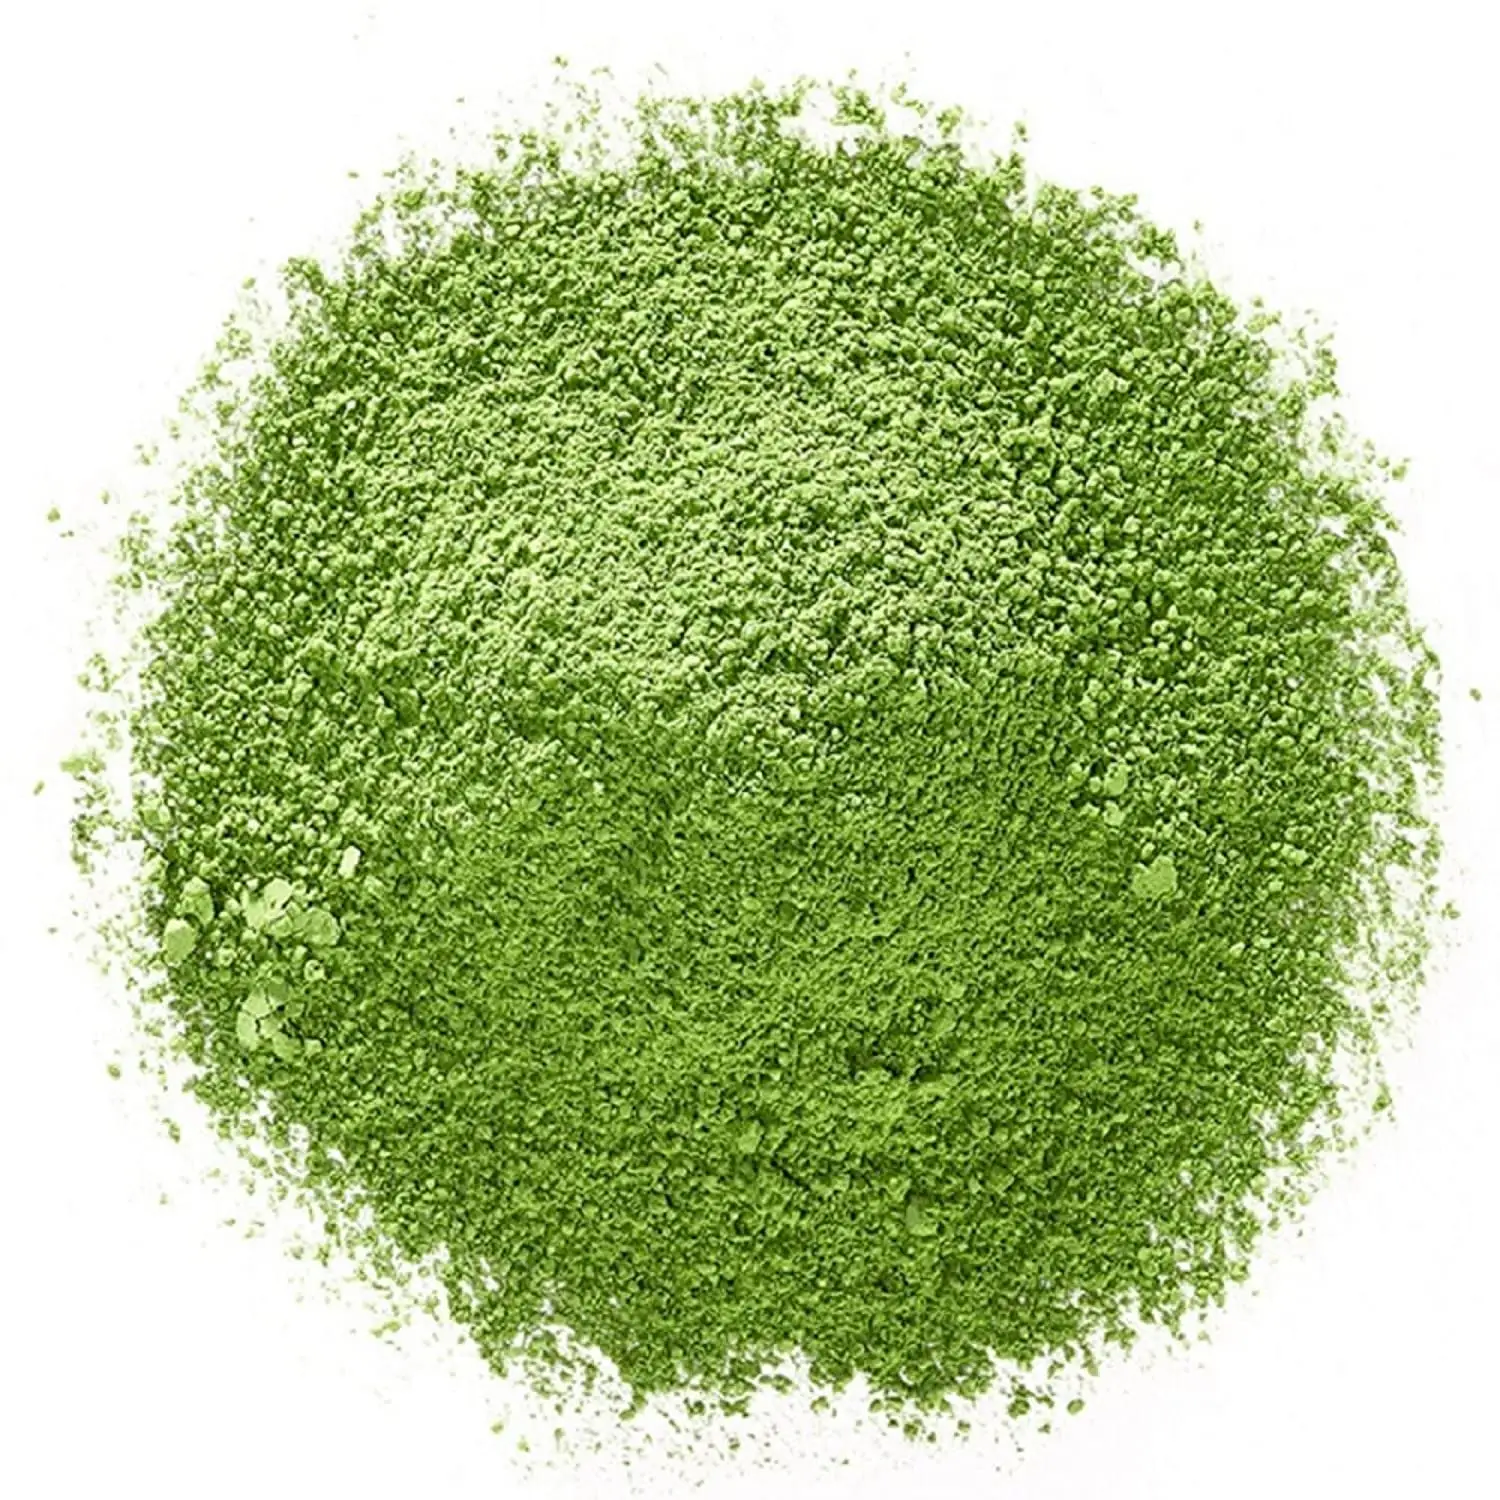 Tè verde Matcha cerimoniale biologico in polvere tè Matcha di grado culinario Premium puro tè verde Matcha tradizionale per frullati